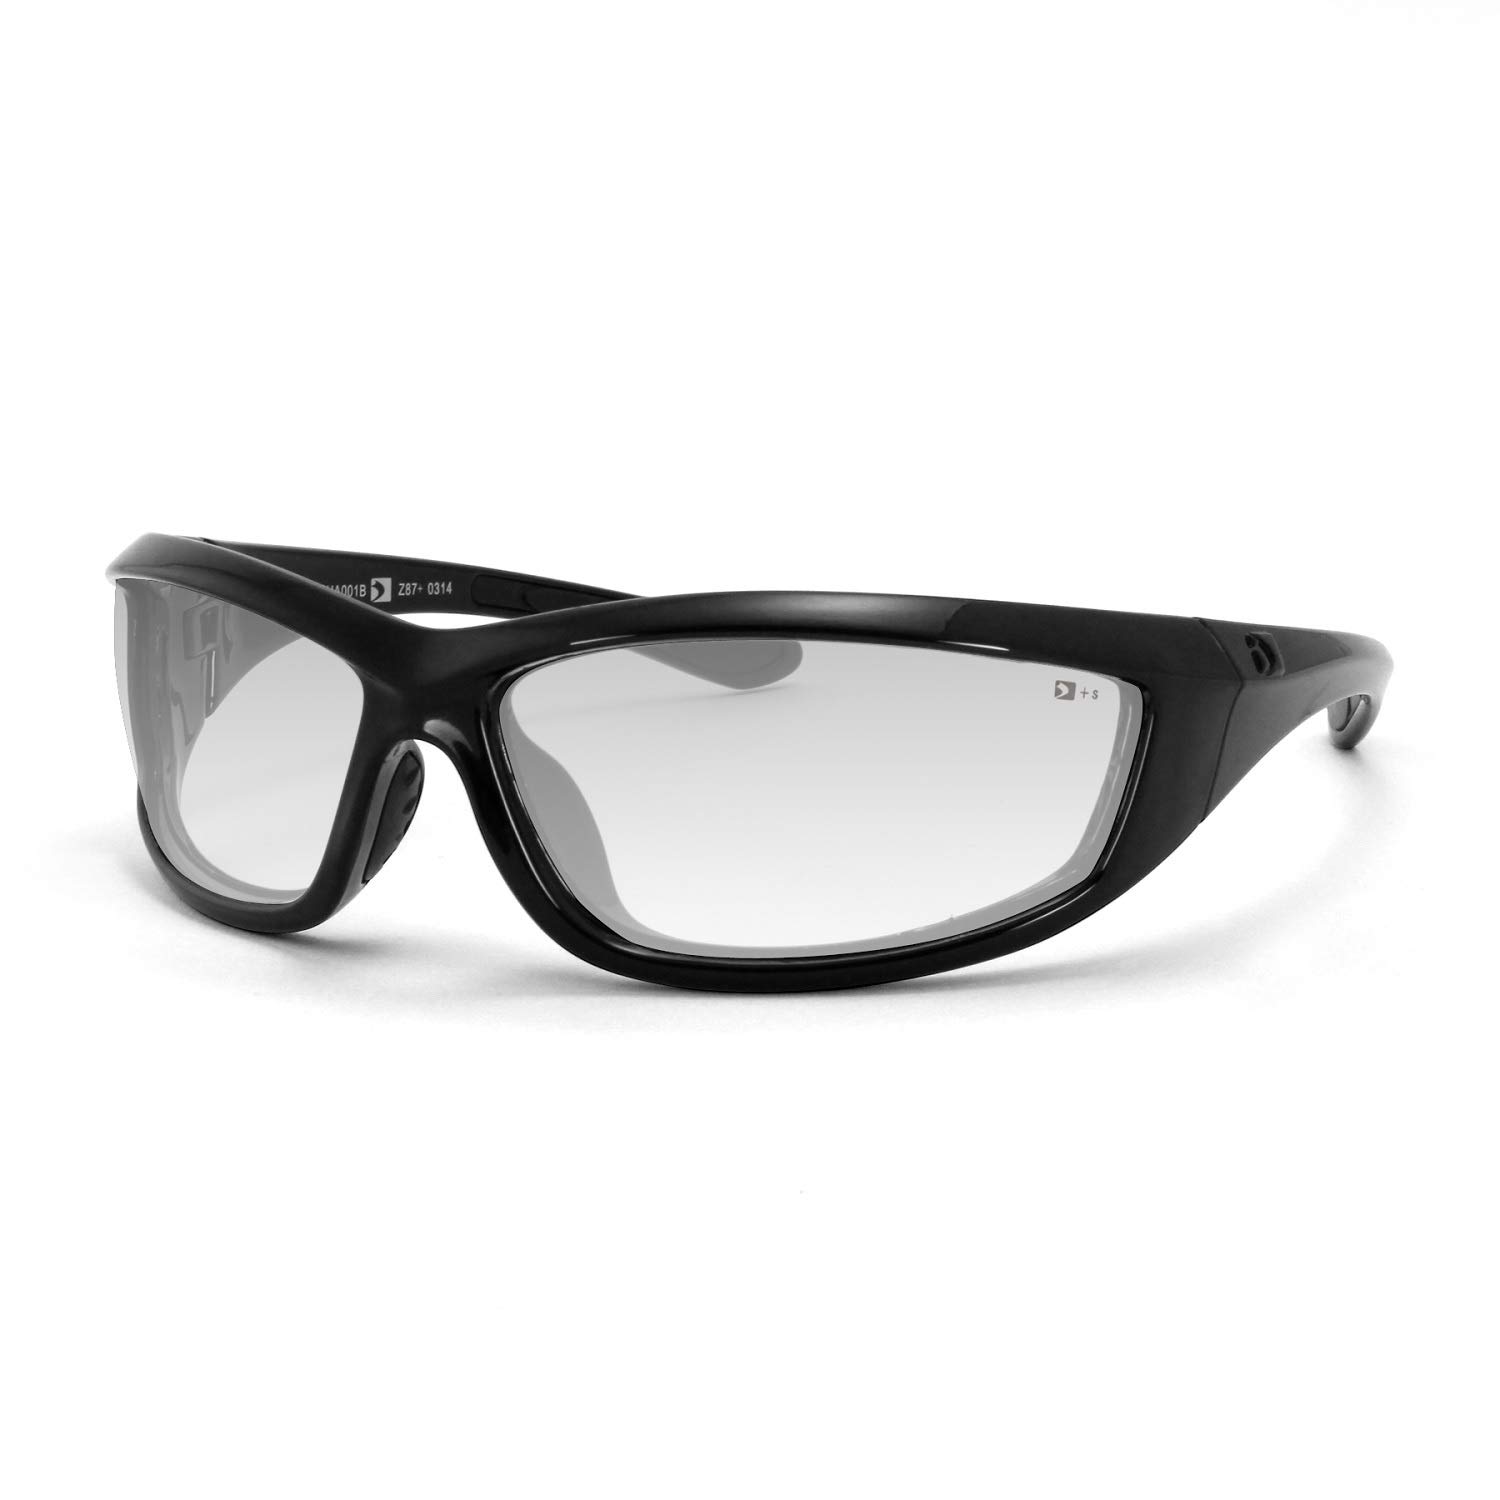 Bobster Charger Black Frame/Clear Lens sunglasses